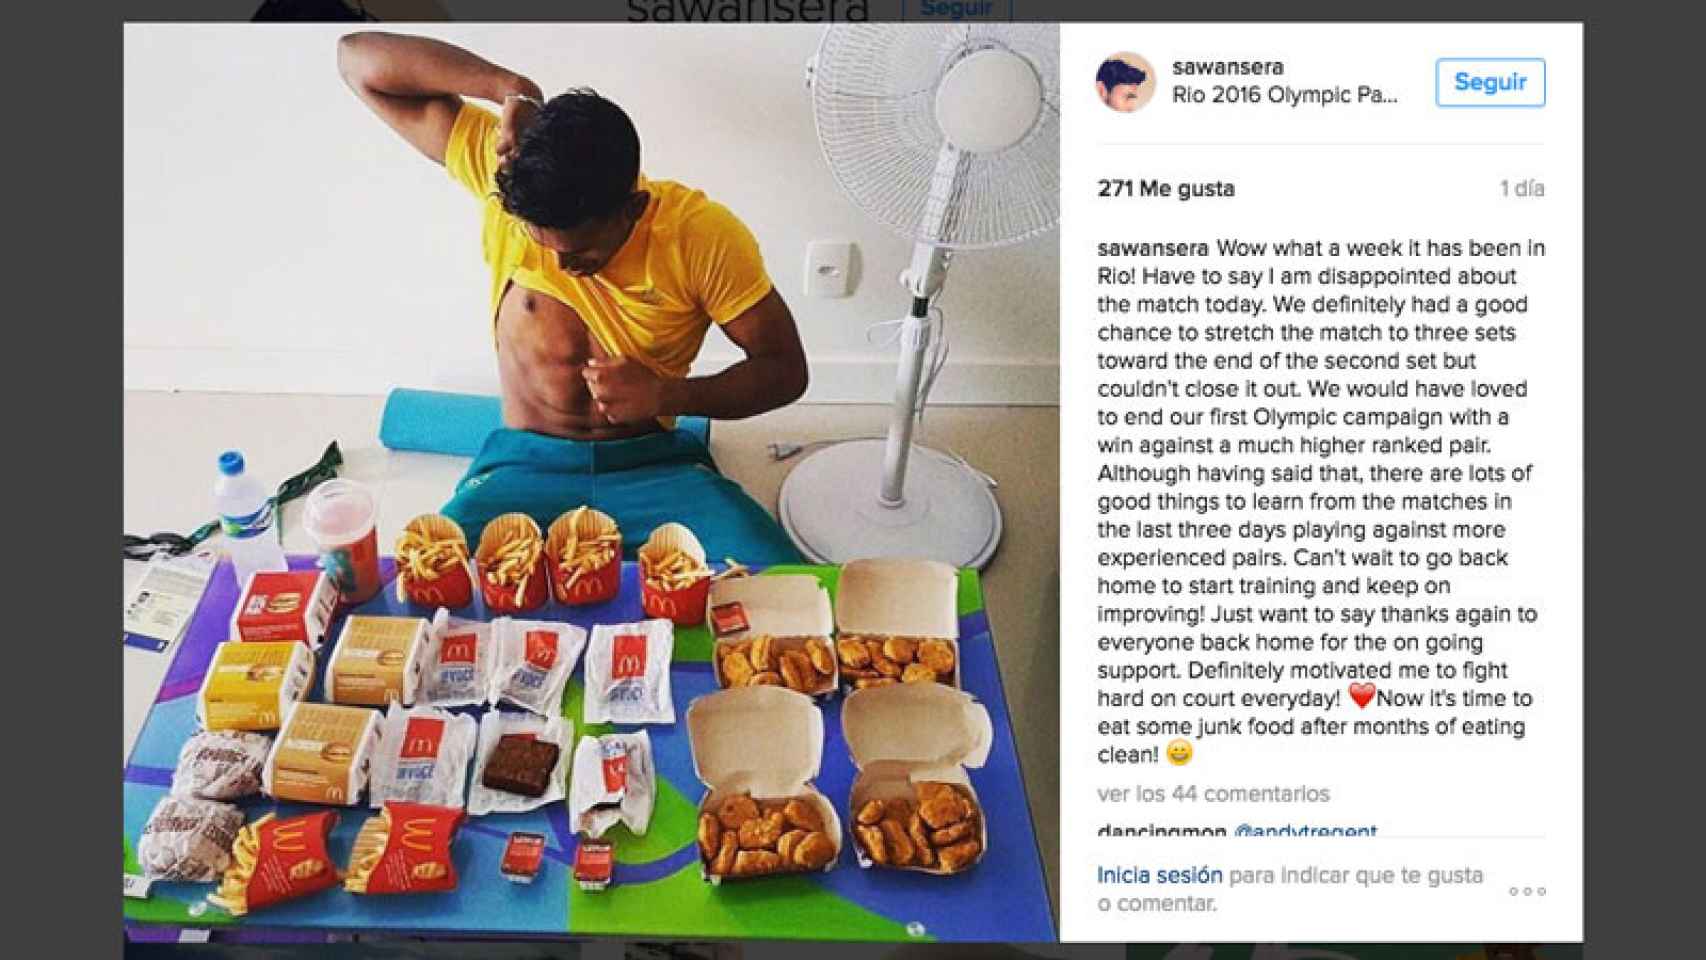 El jugador de bádminton australiano Sawan Serasinghe muestra su atracón de comida basura en Río. / CG